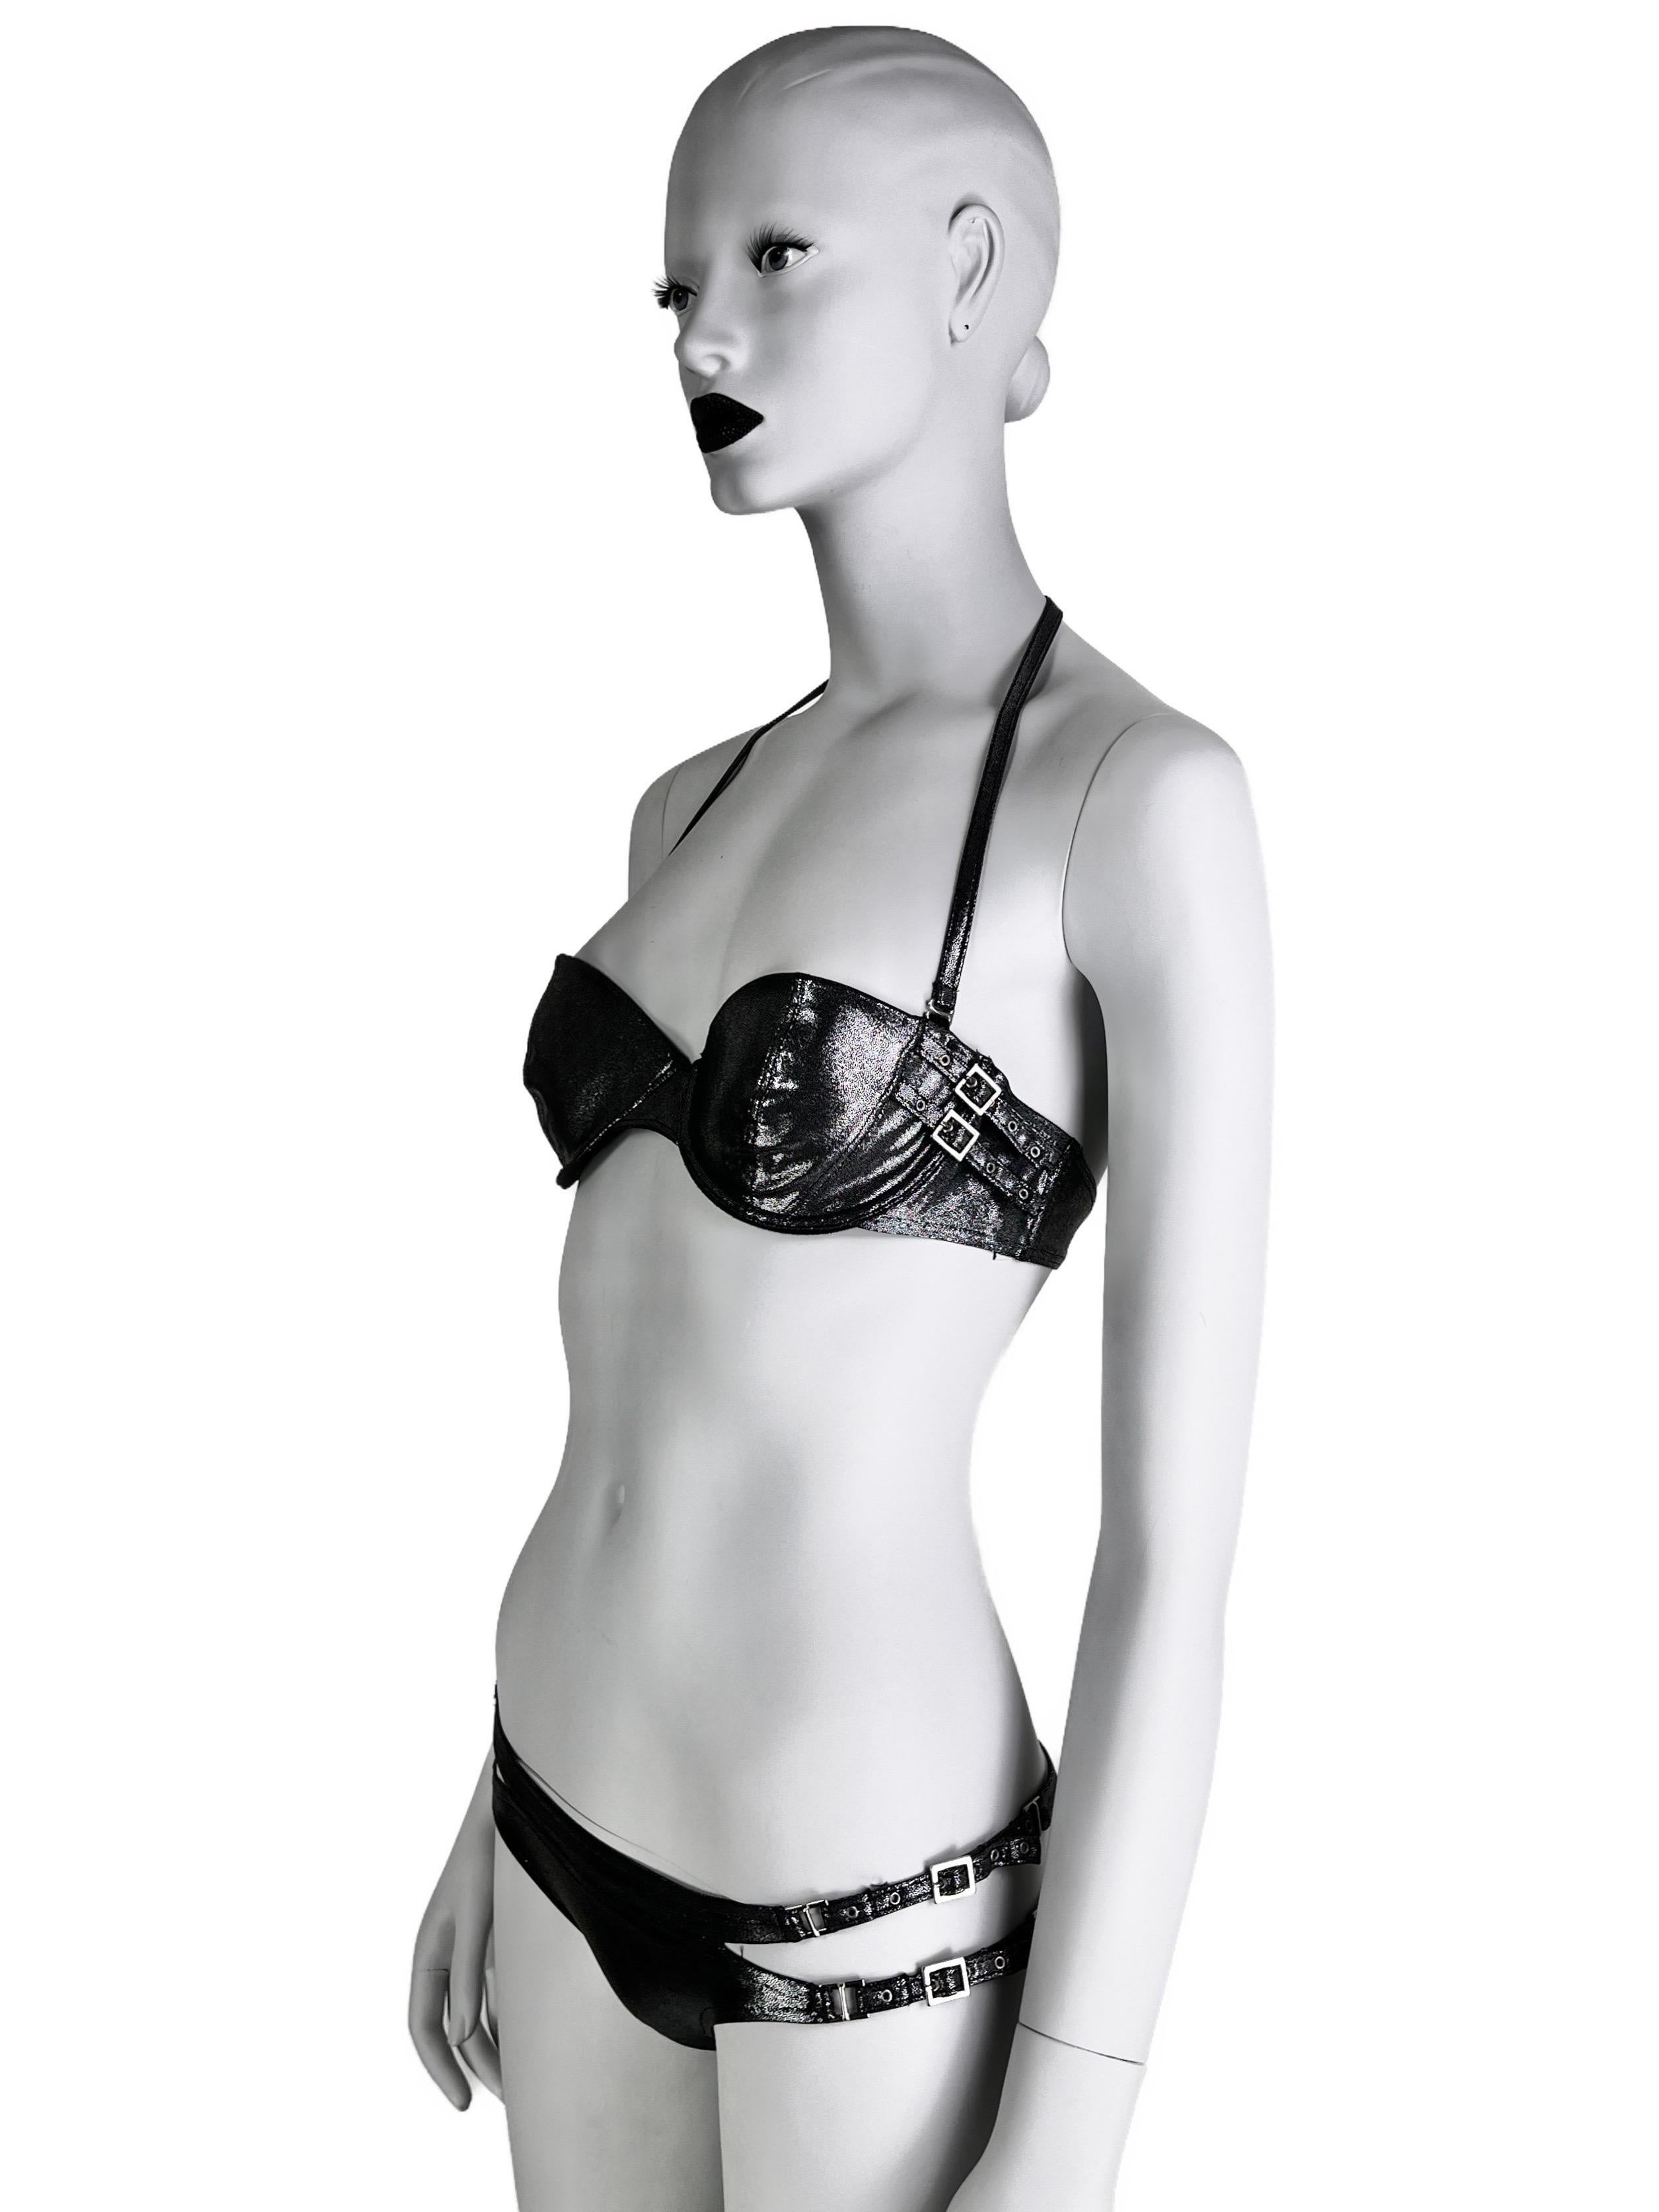 Ein seltener Bikini von Dior aus der Frühjahrssaison 2004, der den auf dem Laufsteg gezeigten Modellen in einem sehr dunklen Silberton ähnelt.

Mit von Dior geprägten Trägern und sexy Ausschnitten am Po. 

Größe 34(75)B für das Bikini-Oberteil und